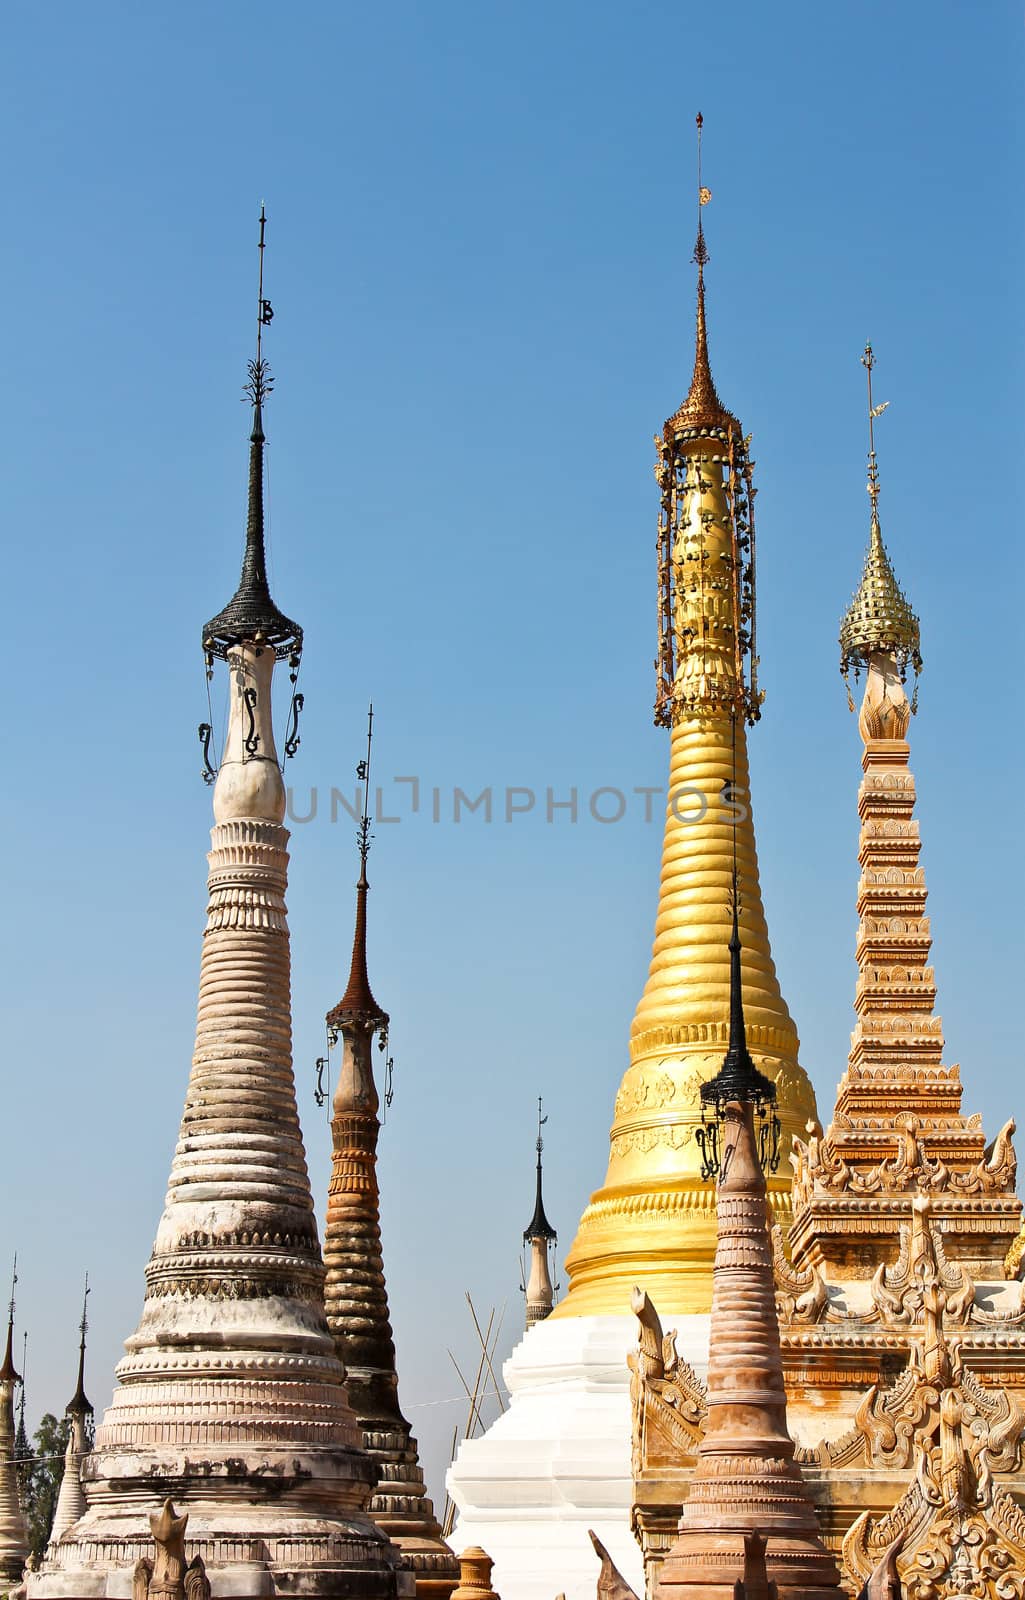 Pagodas in a Temple in Inle lake,Burma